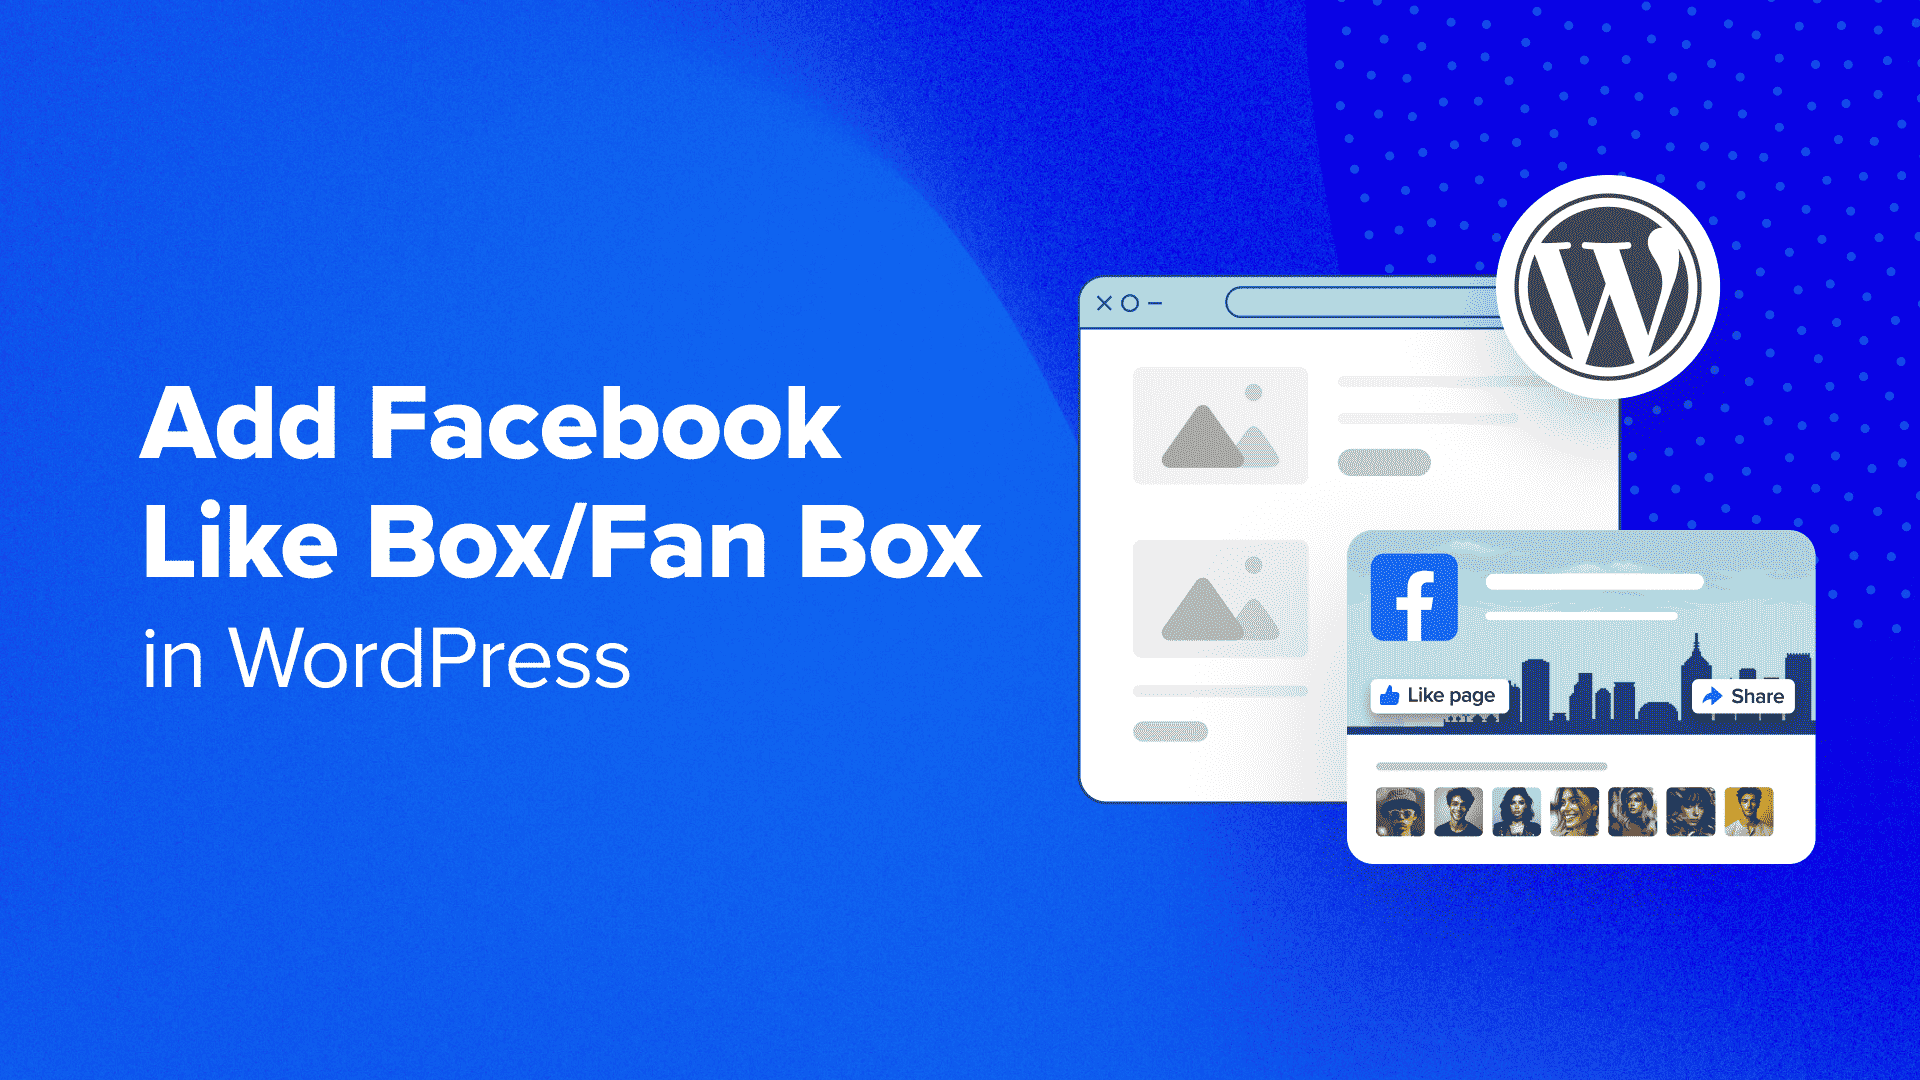 How to Add a Facebook Like Box / Fan Box in WordPress